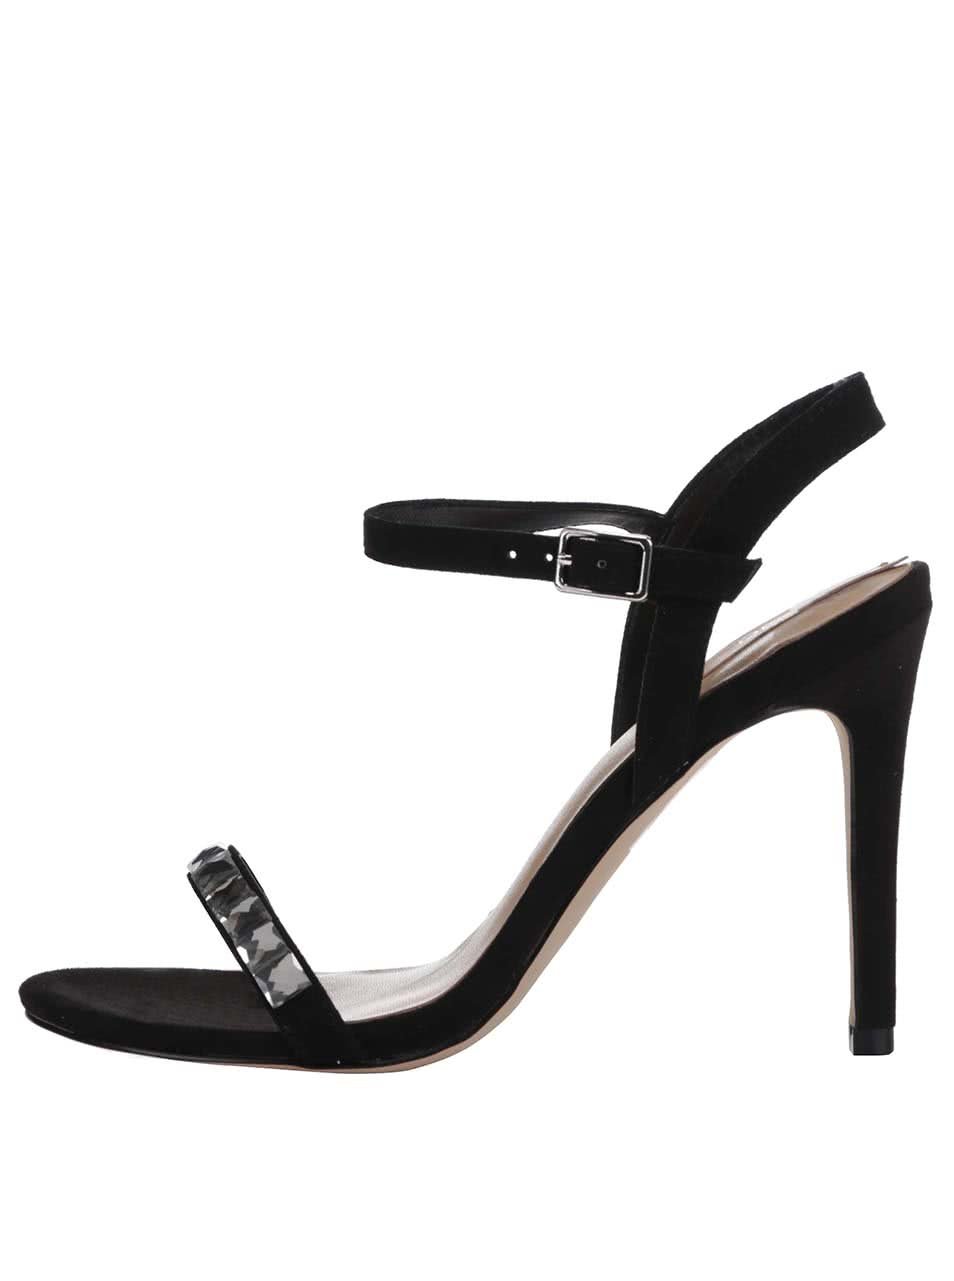 Černé zdobené sandálky ALDO Edilisien